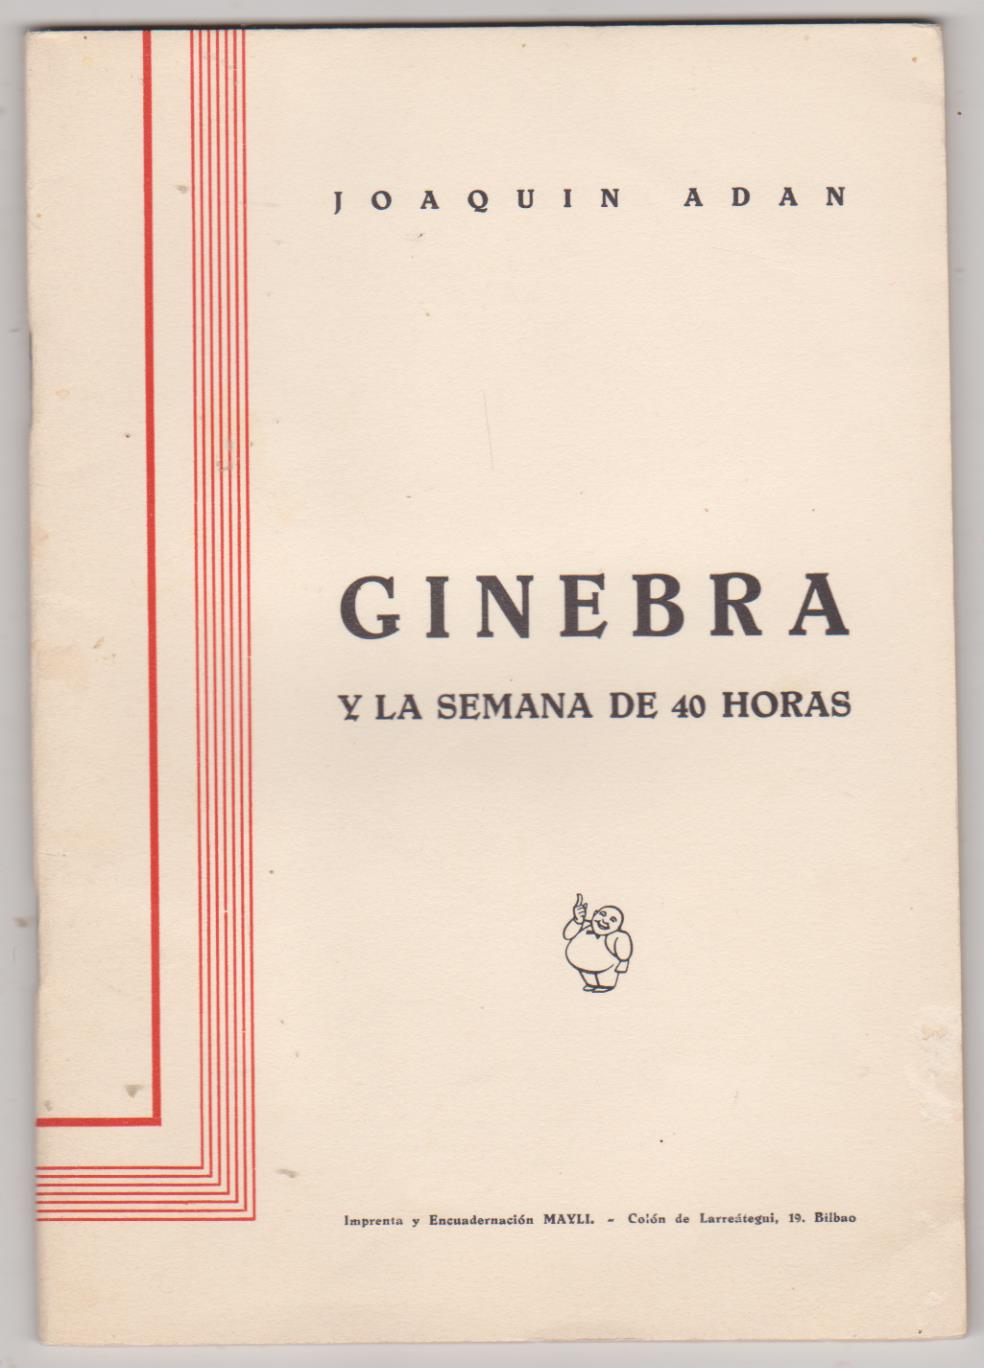 Joaquín Adán. Ginebra y la Semana de 40 horas. Myli-Bilbao 1935